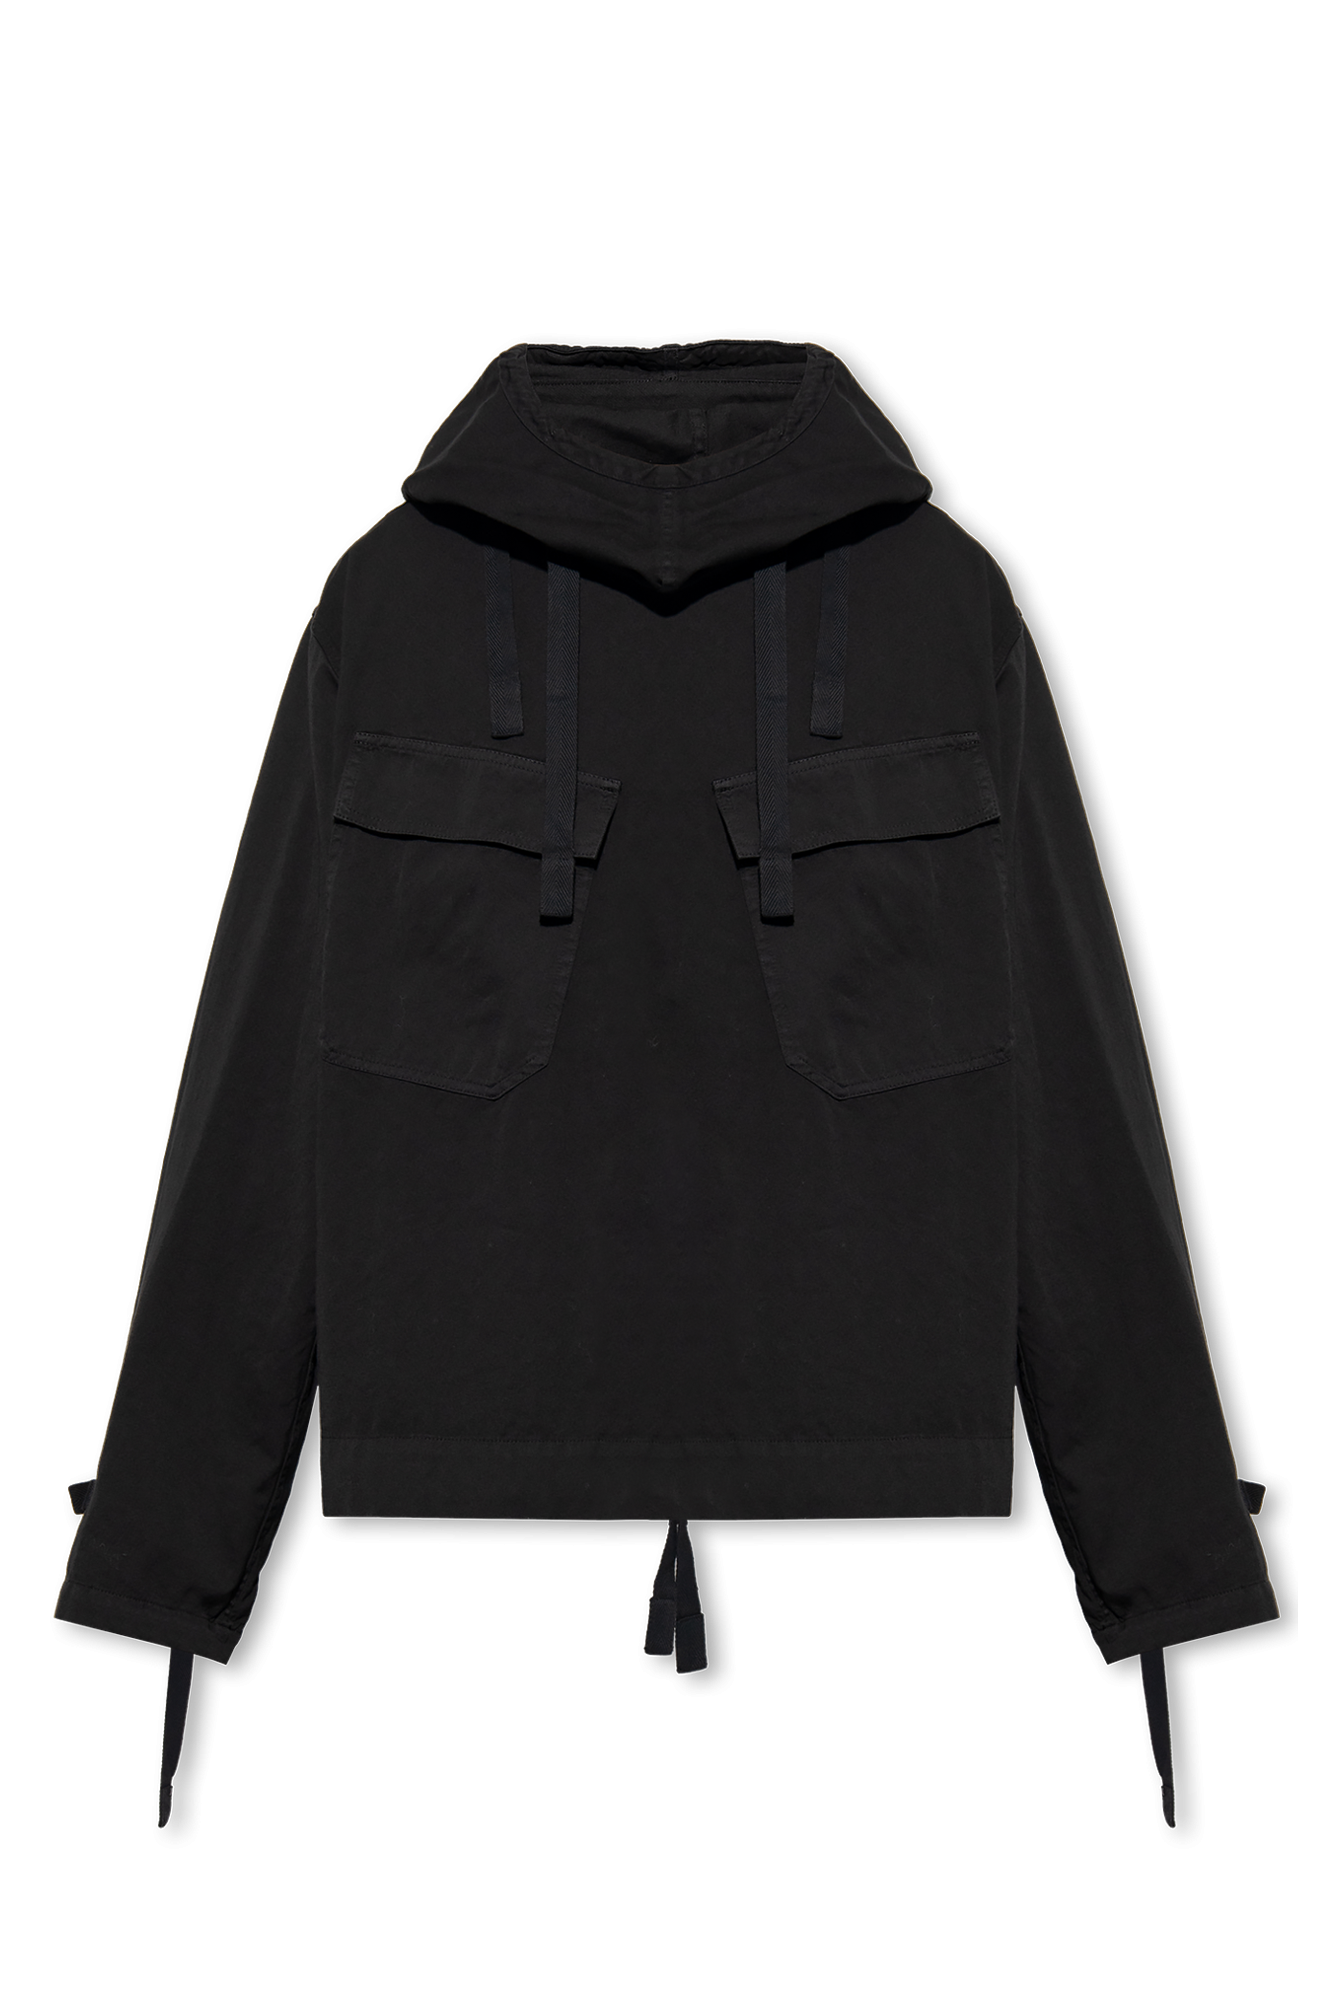 Dries Van Noten Light jacket with hood